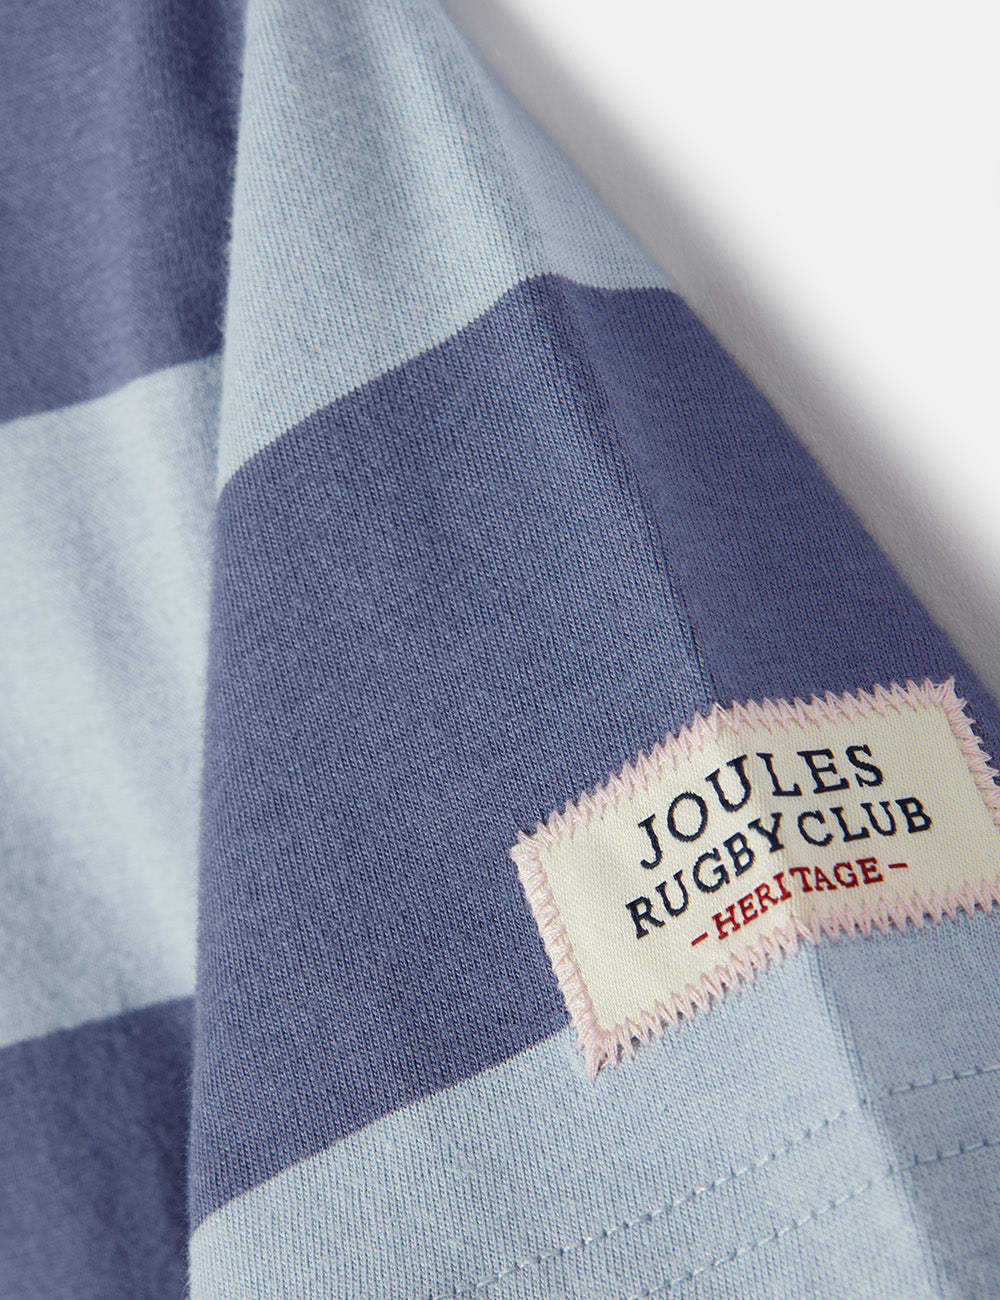 Joules Ozzy Stripe Polo Shirt - Blue Stripe